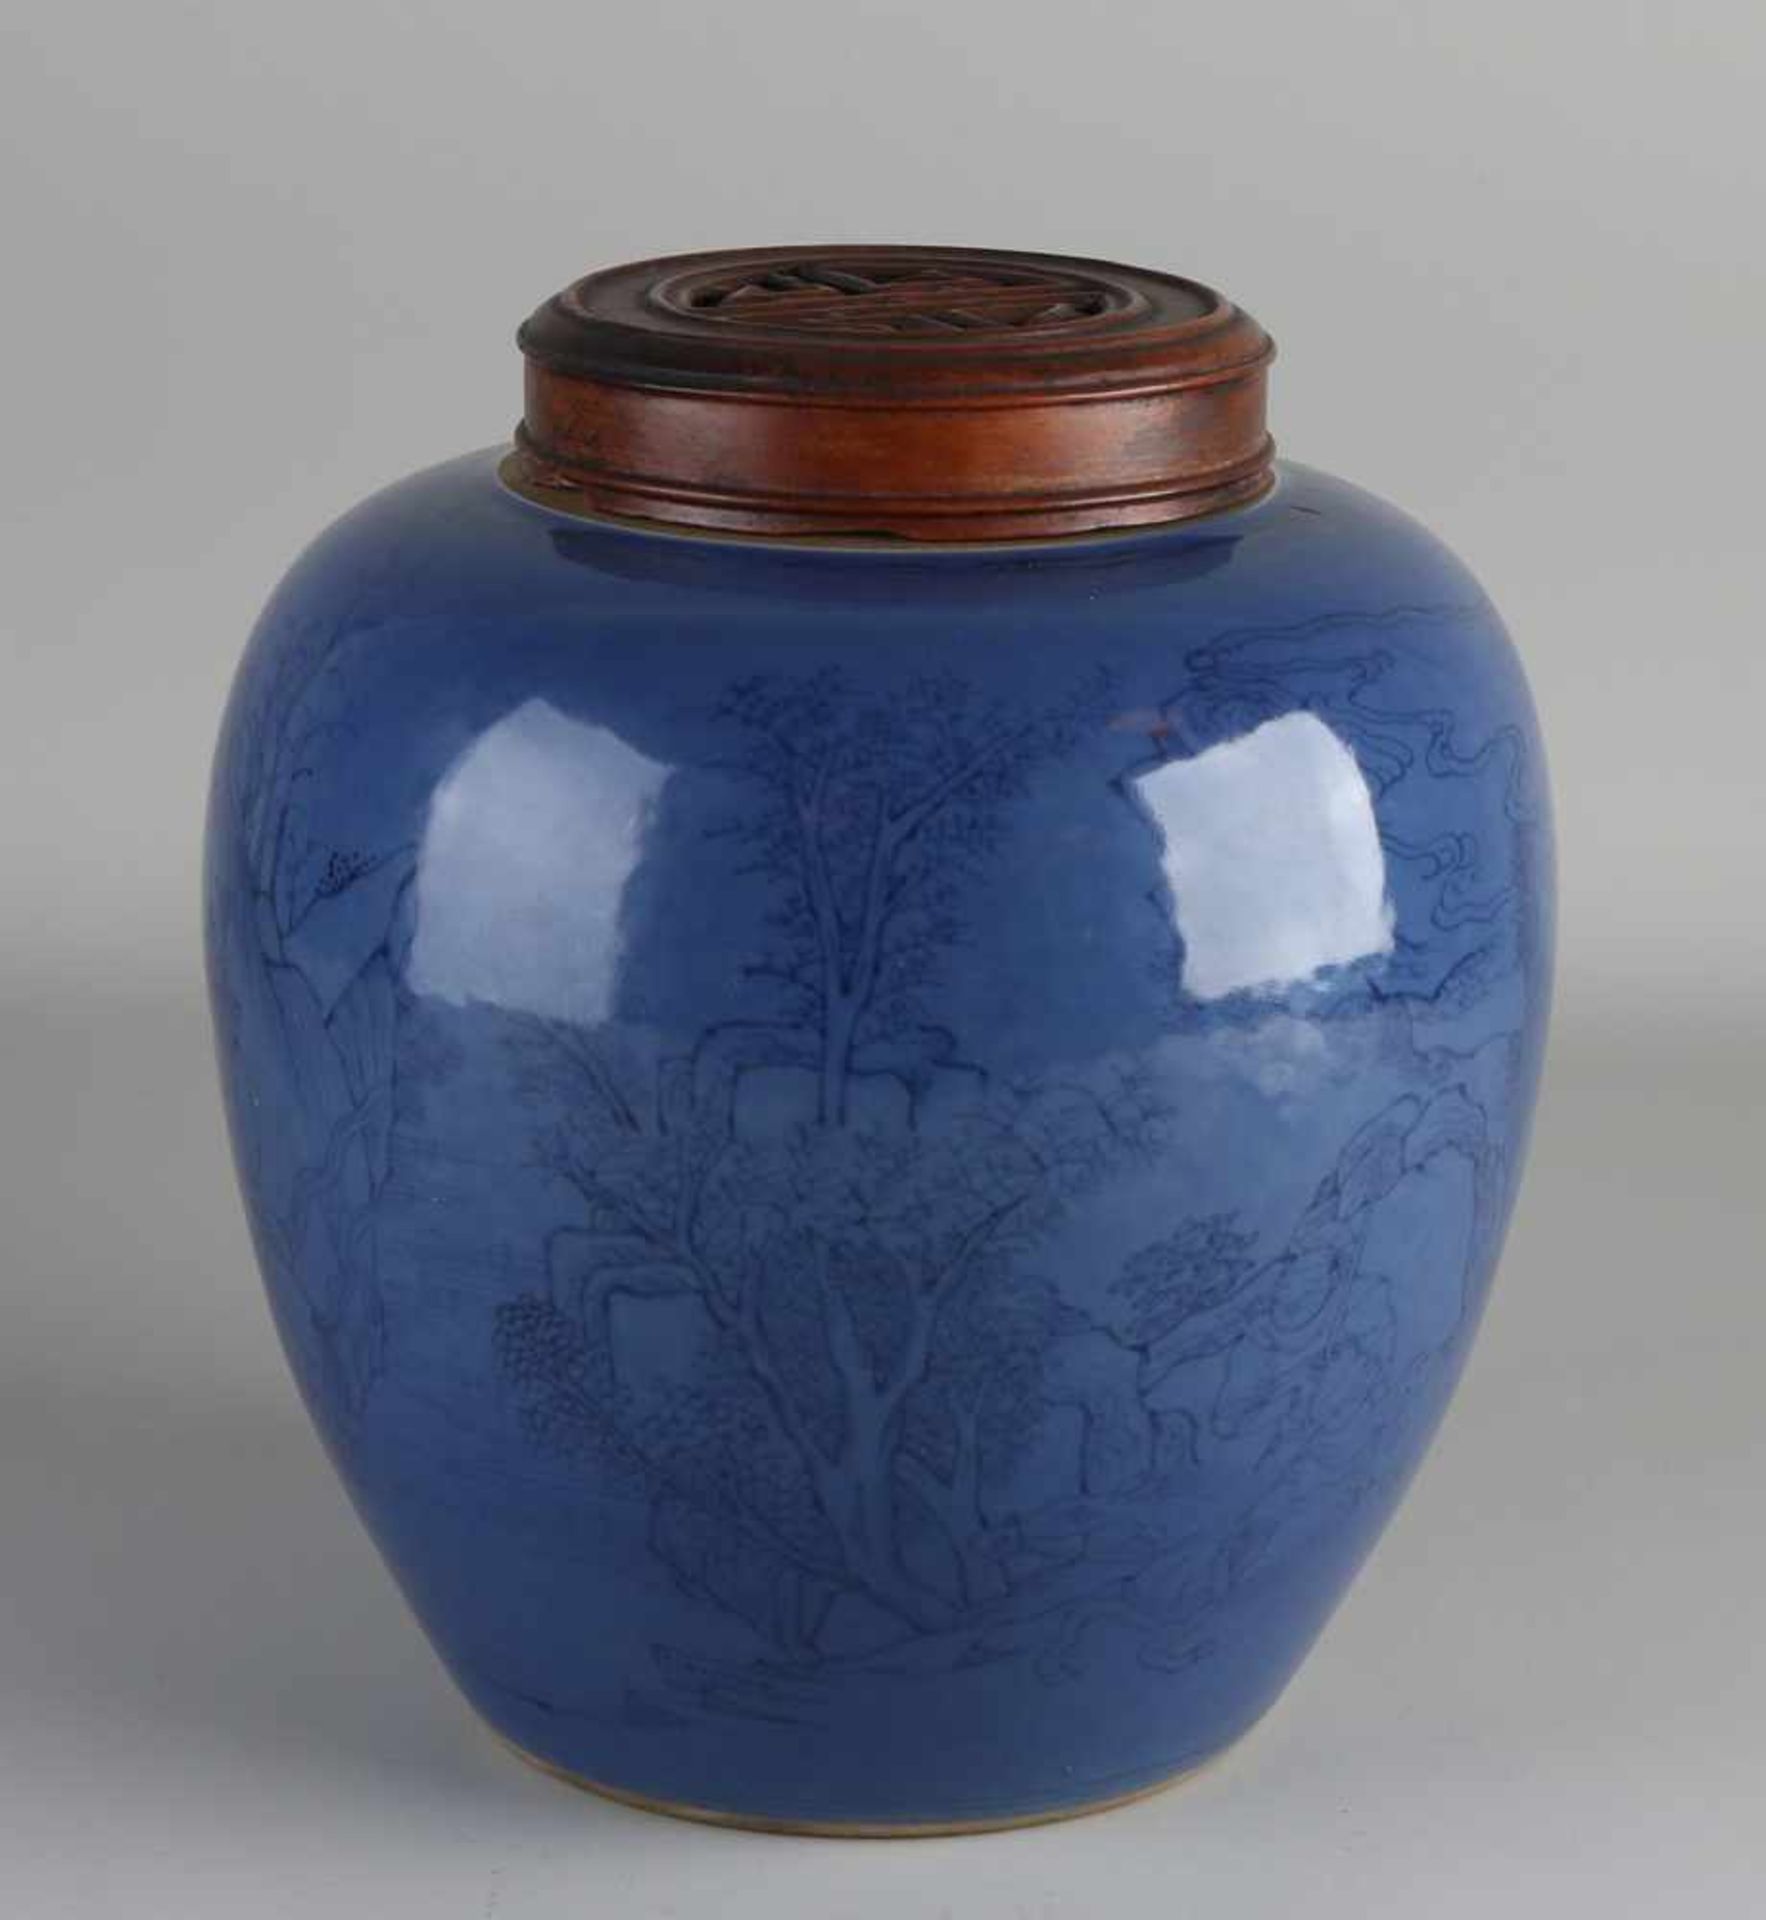 Großes chinesisches Ingwerglas aus Porzellan mit Holzdeckel, blauer Glasur und dekorativen Figuren - Bild 2 aus 3